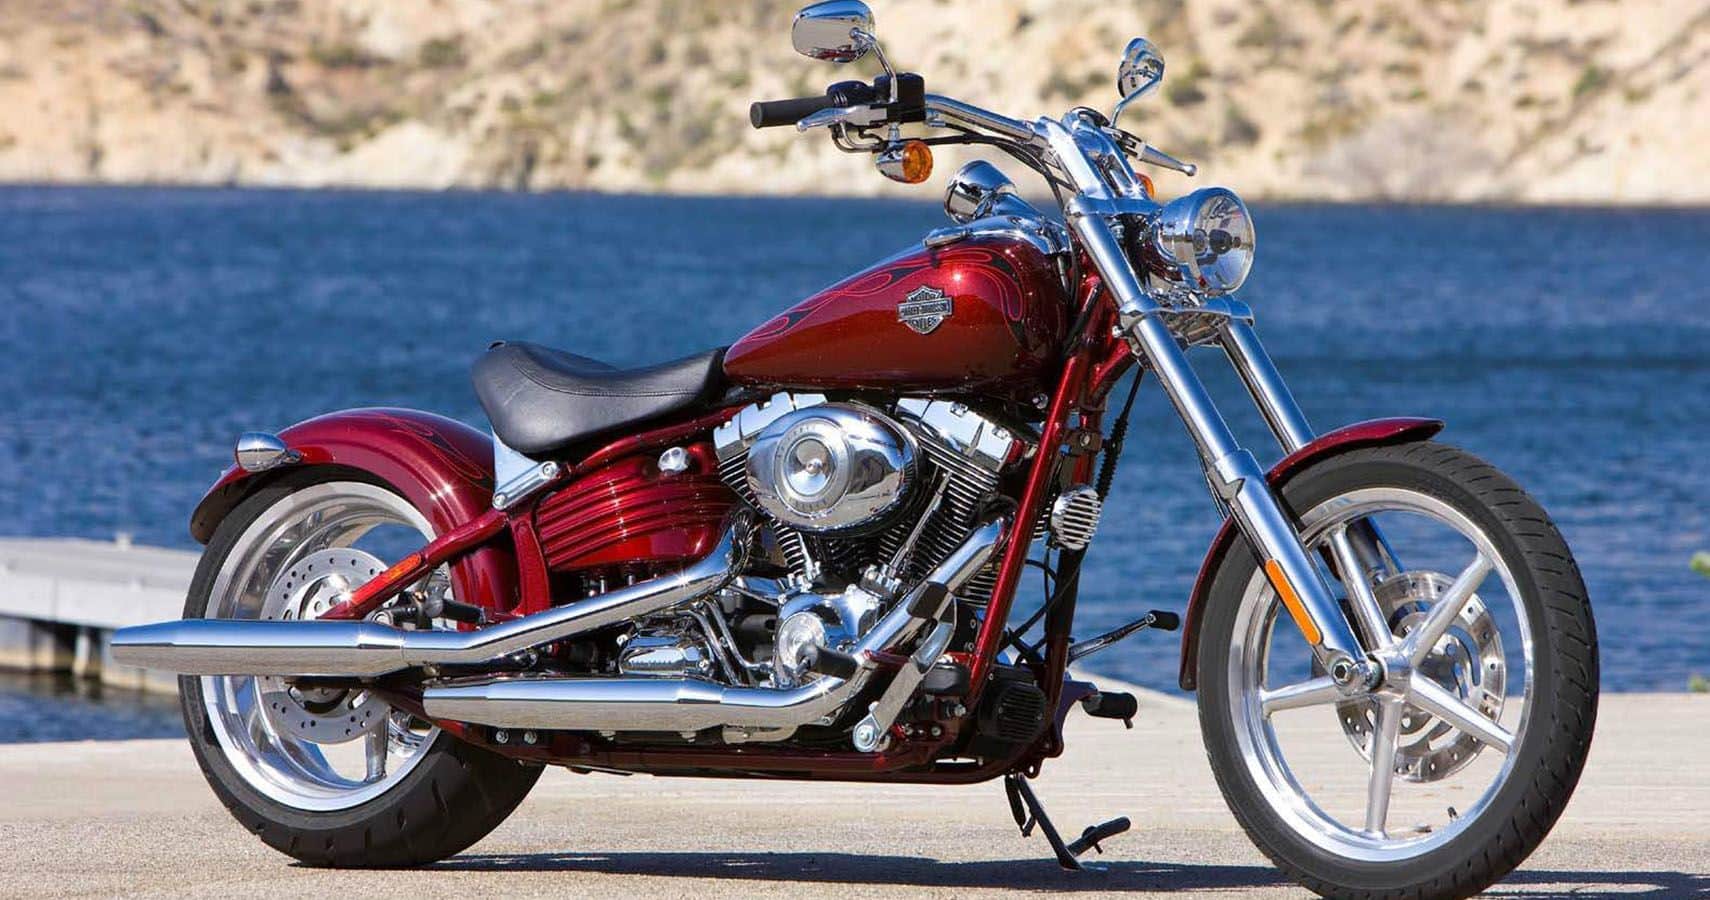 La Harley-Davidson Rocker era una moto Softail que salió al mercado en 2008, pero que tenía un aspecto engañoso de Hardtail